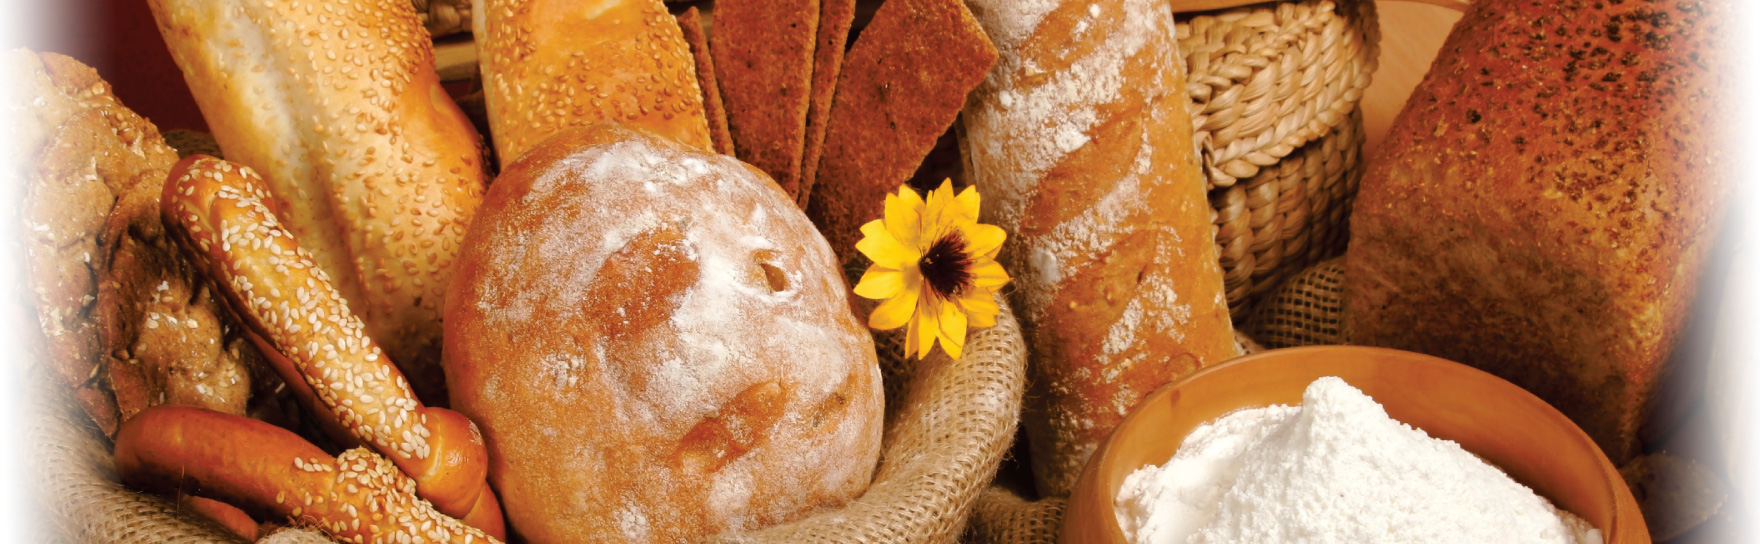 Todos os tipos de pães está na padaria Arte Do trigo